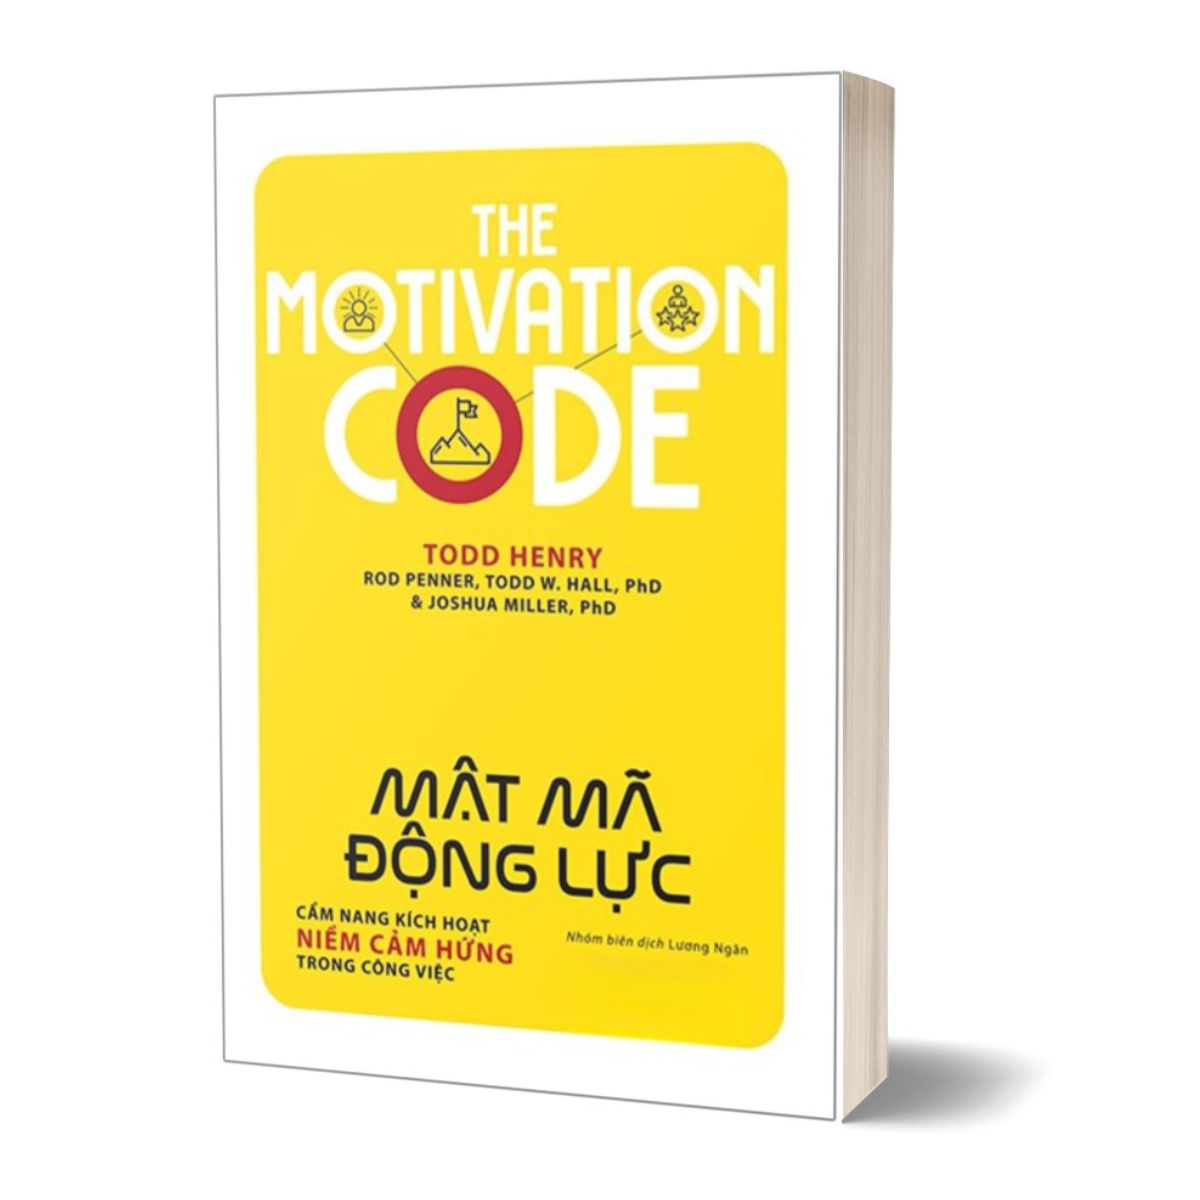 The Motivation Code - Mật Mã Động Lực